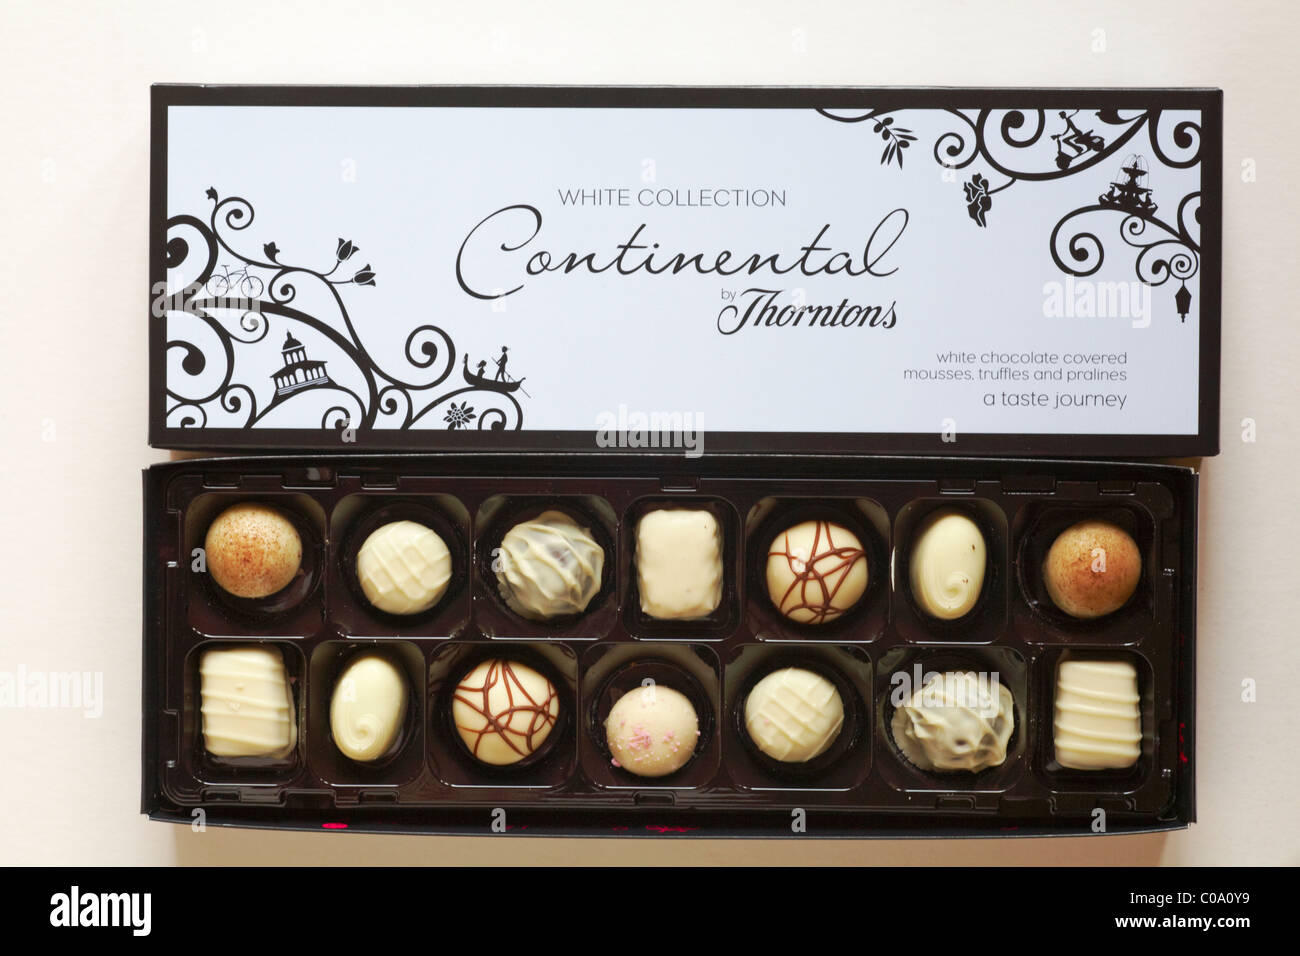 Geöffnete Verpackung von weißer Schokolade Continental Schokolade von Thorntons Übersicht Inhalt - Mousse von weißer Schokolade, Trüffel und Pralinen abgedeckt Stockfoto